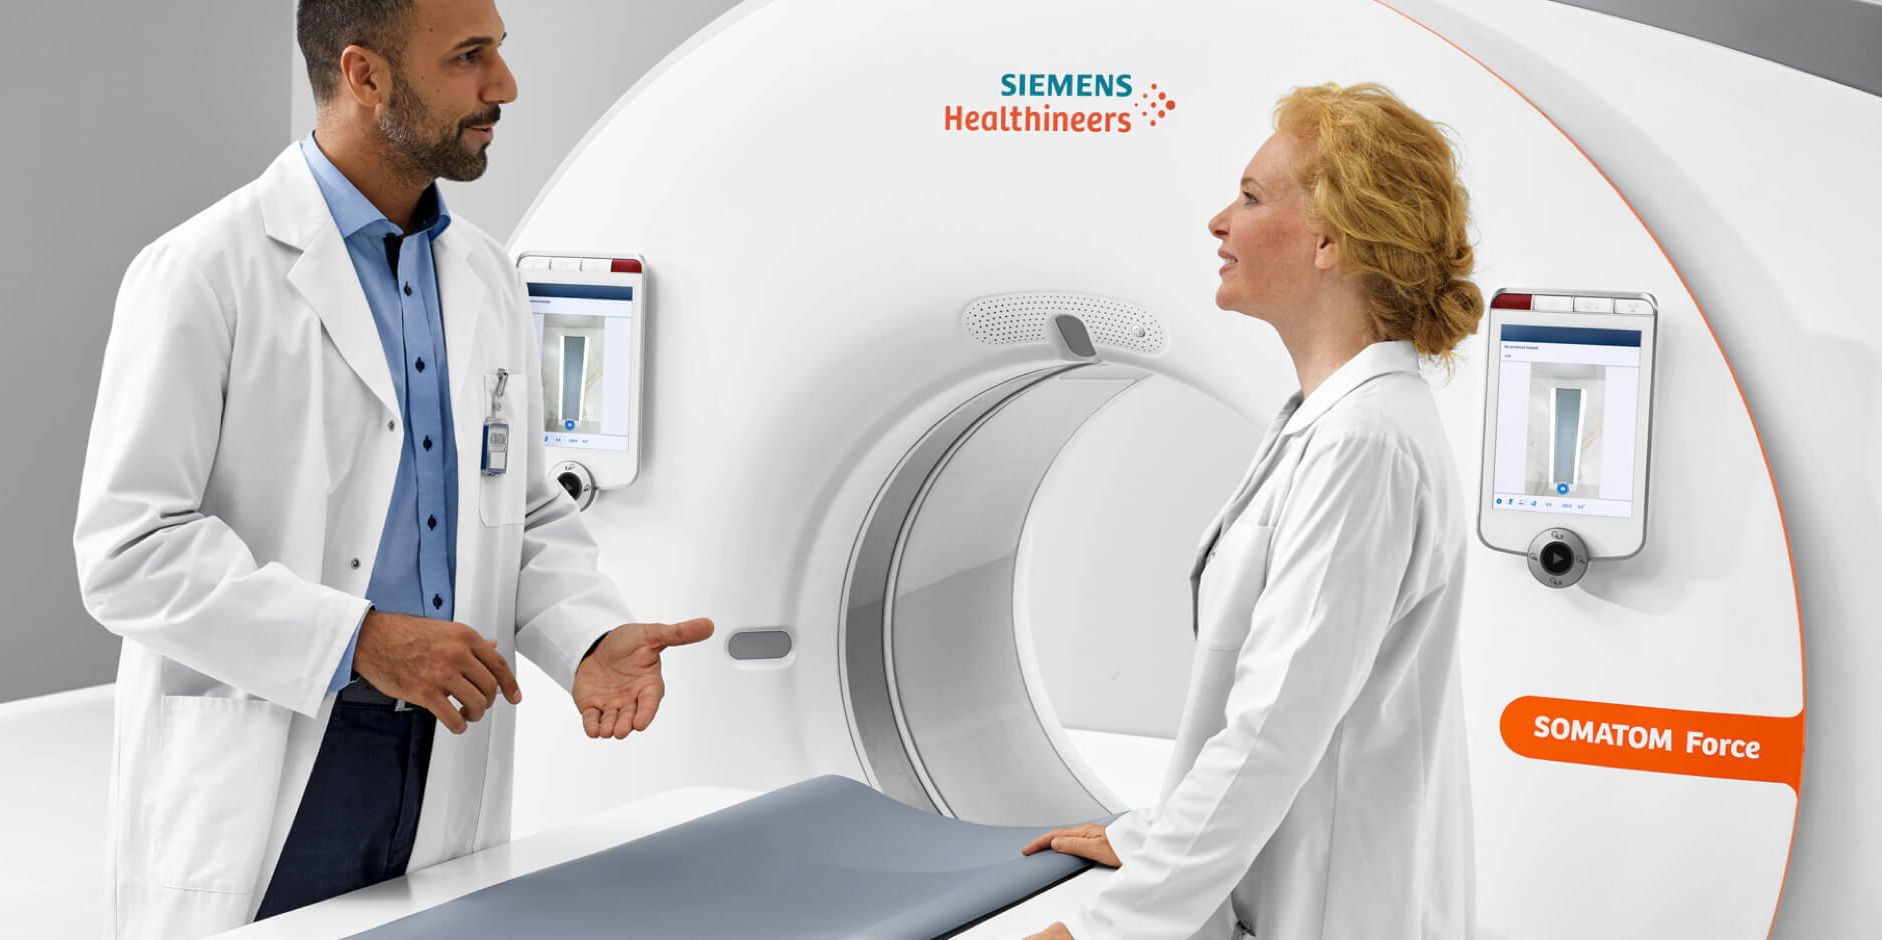 Siemens Healthineers presteert op alle fronten beter dan Philips